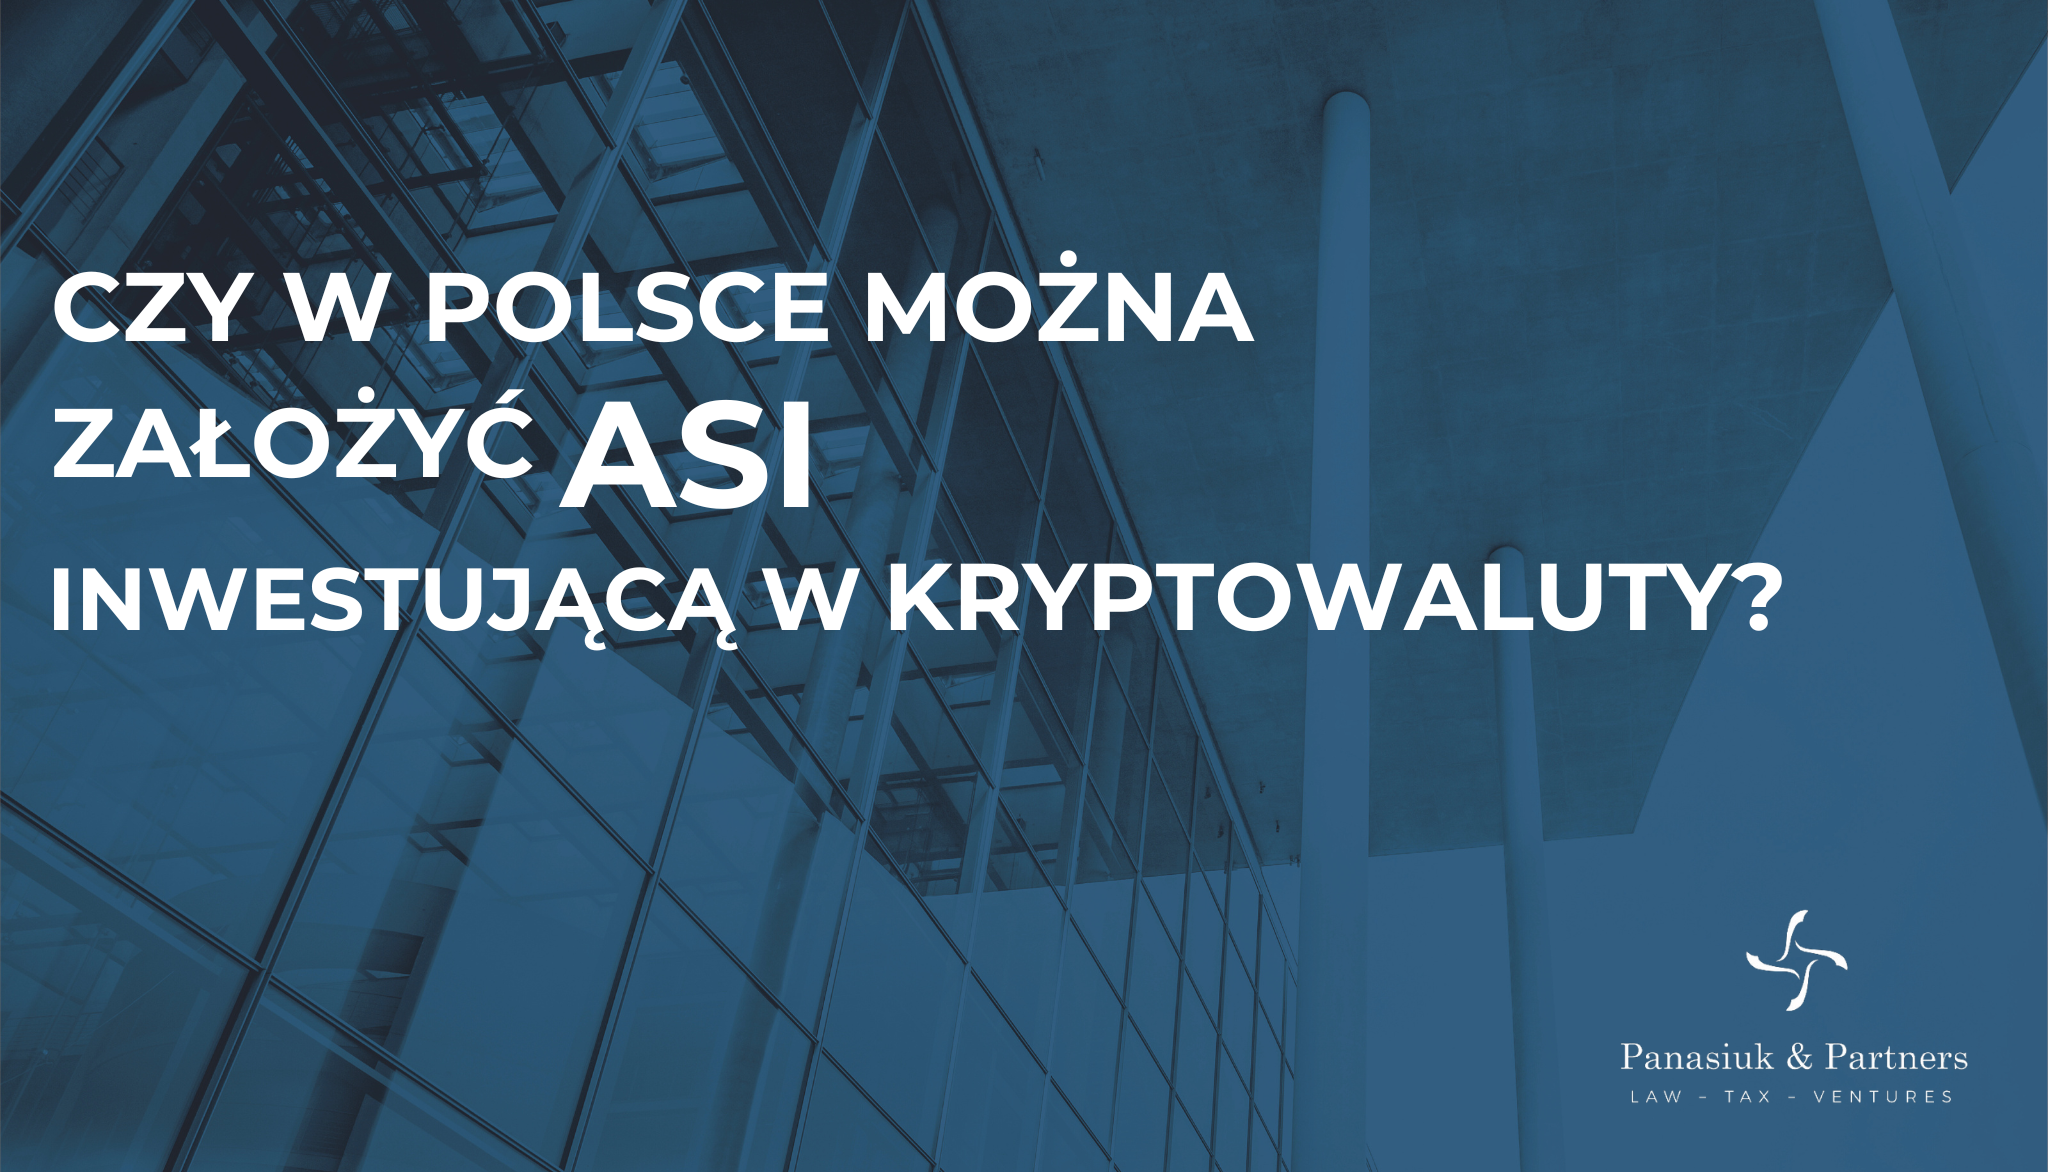 Czy w Polsce można założyć ASI inwestującą w kryptowaluty?